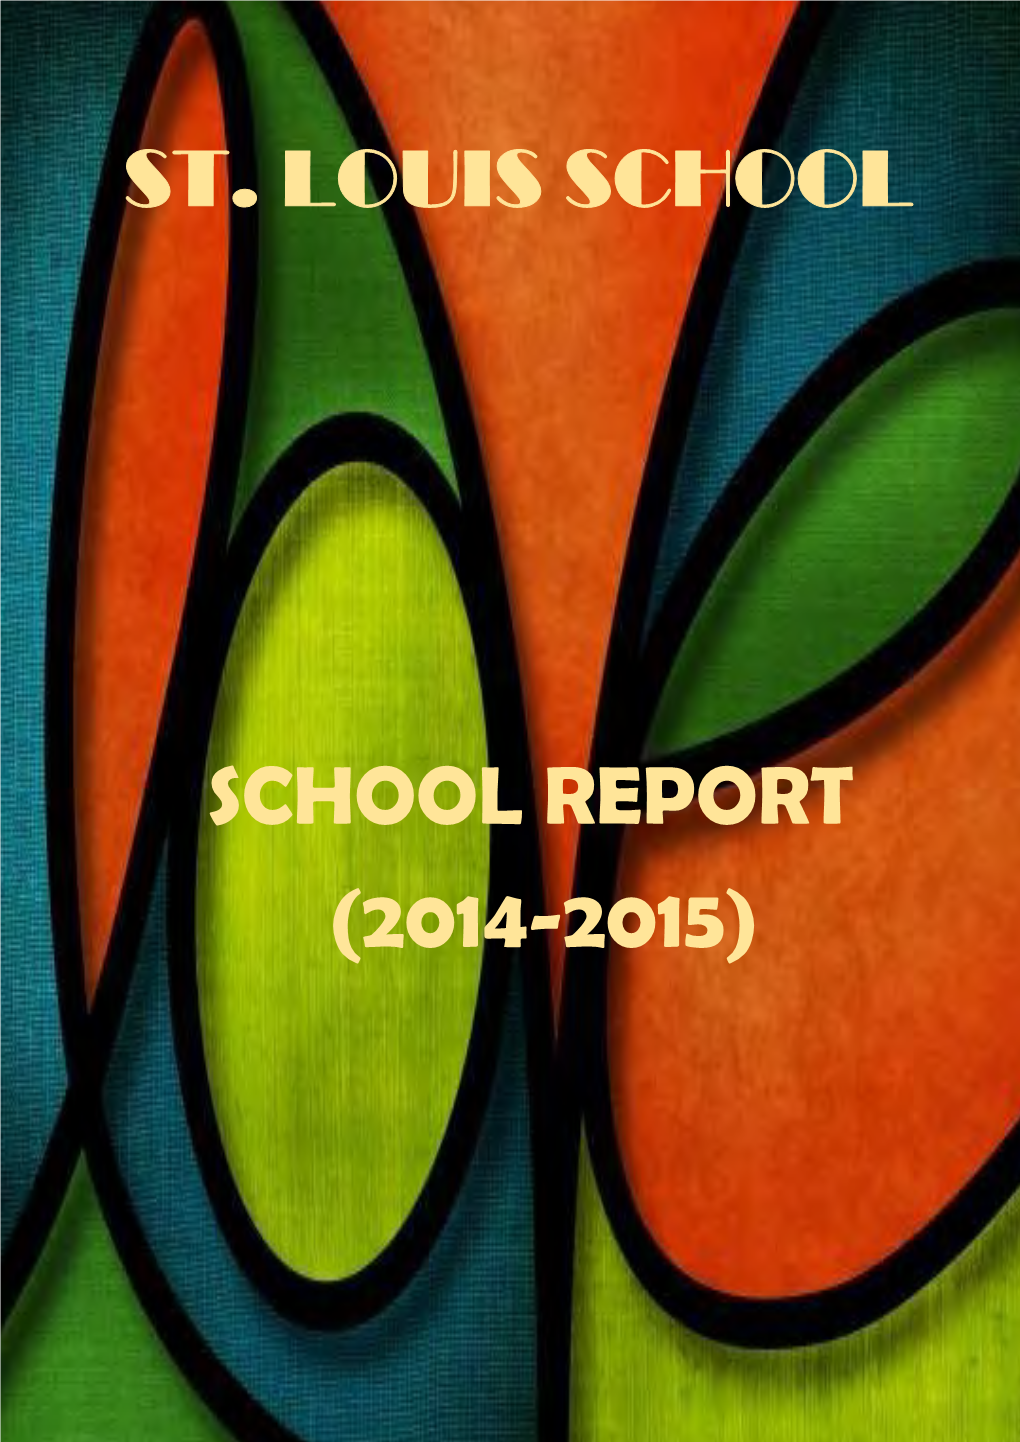 St. Louis School School Report (2014-2015)